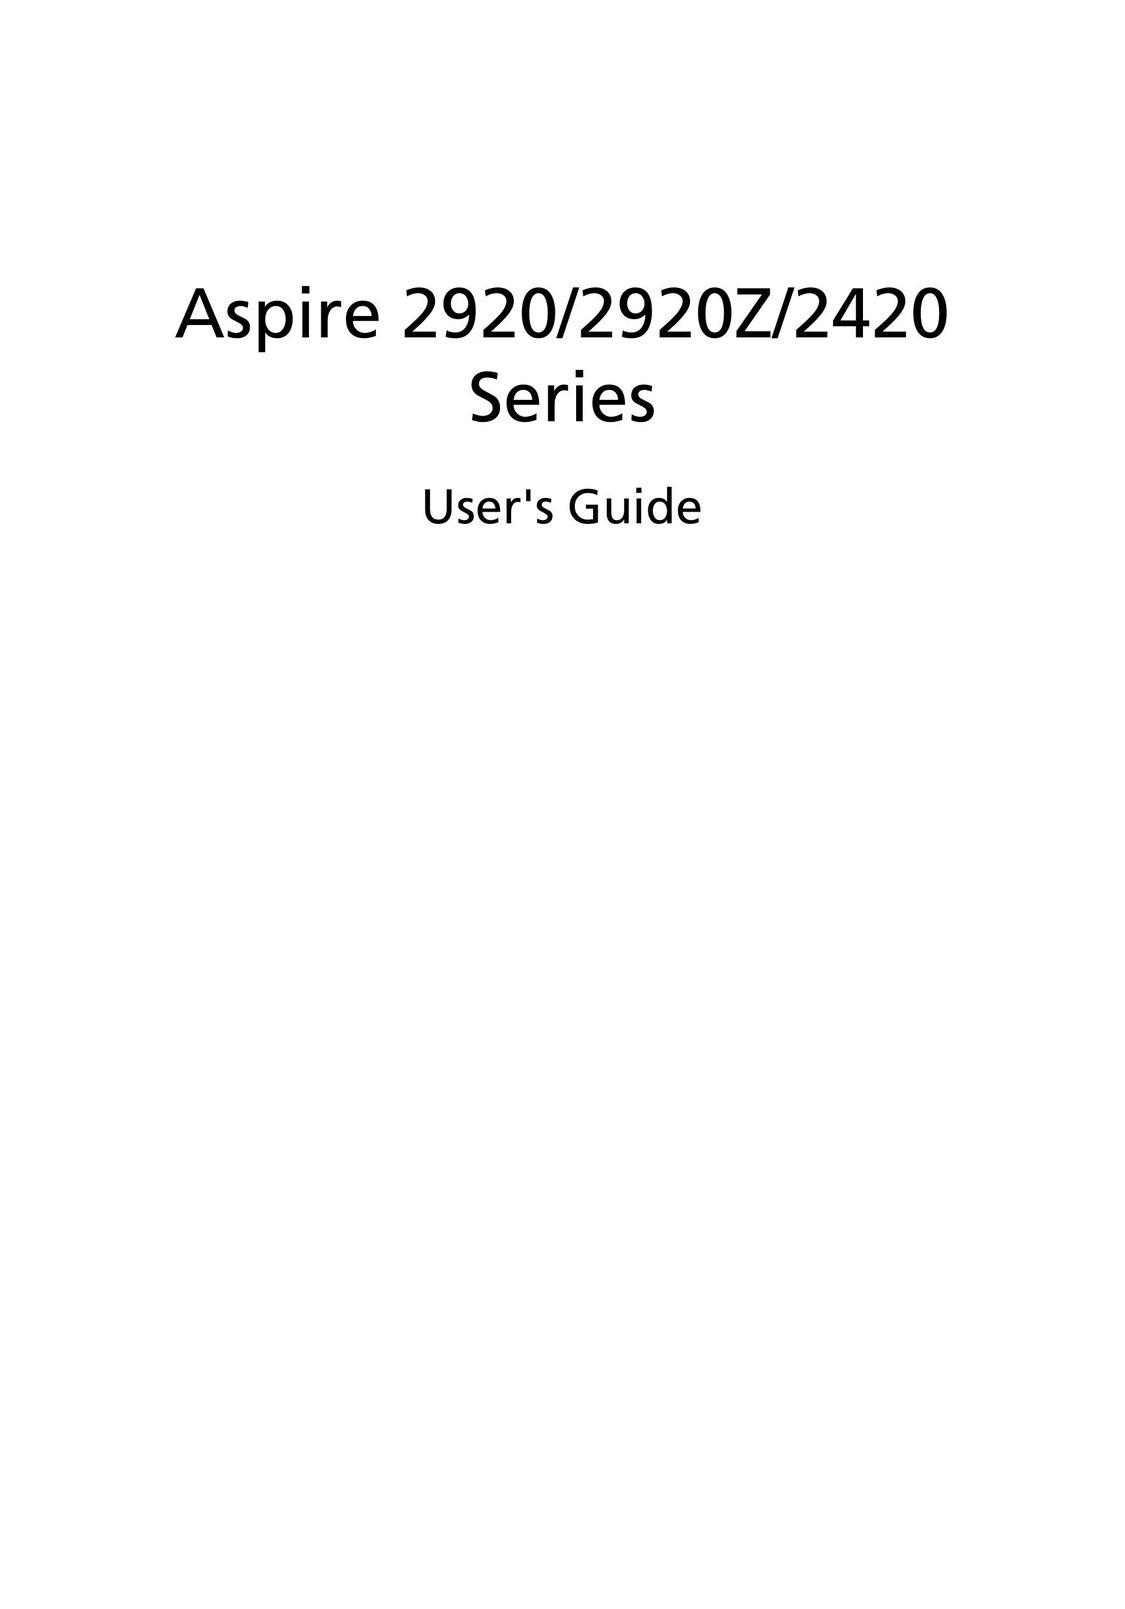 Aspire Digital 2920 Laptop User Manual